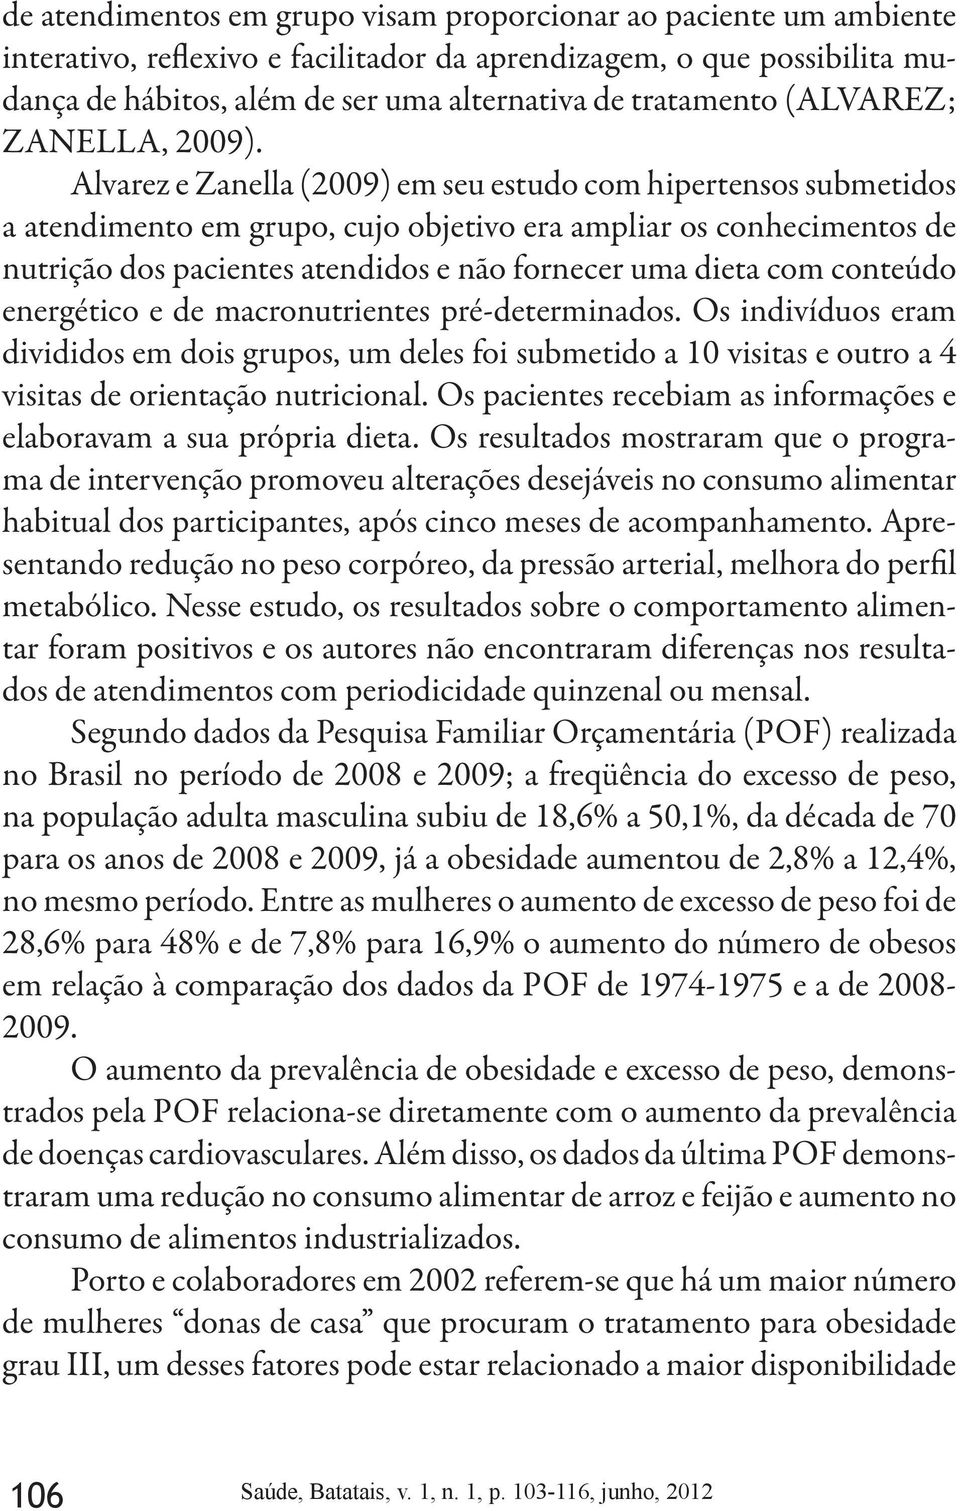 Alvarez e Zanella (2009) em seu estudo com hipertensos submetidos a atendimento em grupo, cujo objetivo era ampliar os conhecimentos de nutrição dos pacientes atendidos e não fornecer uma dieta com